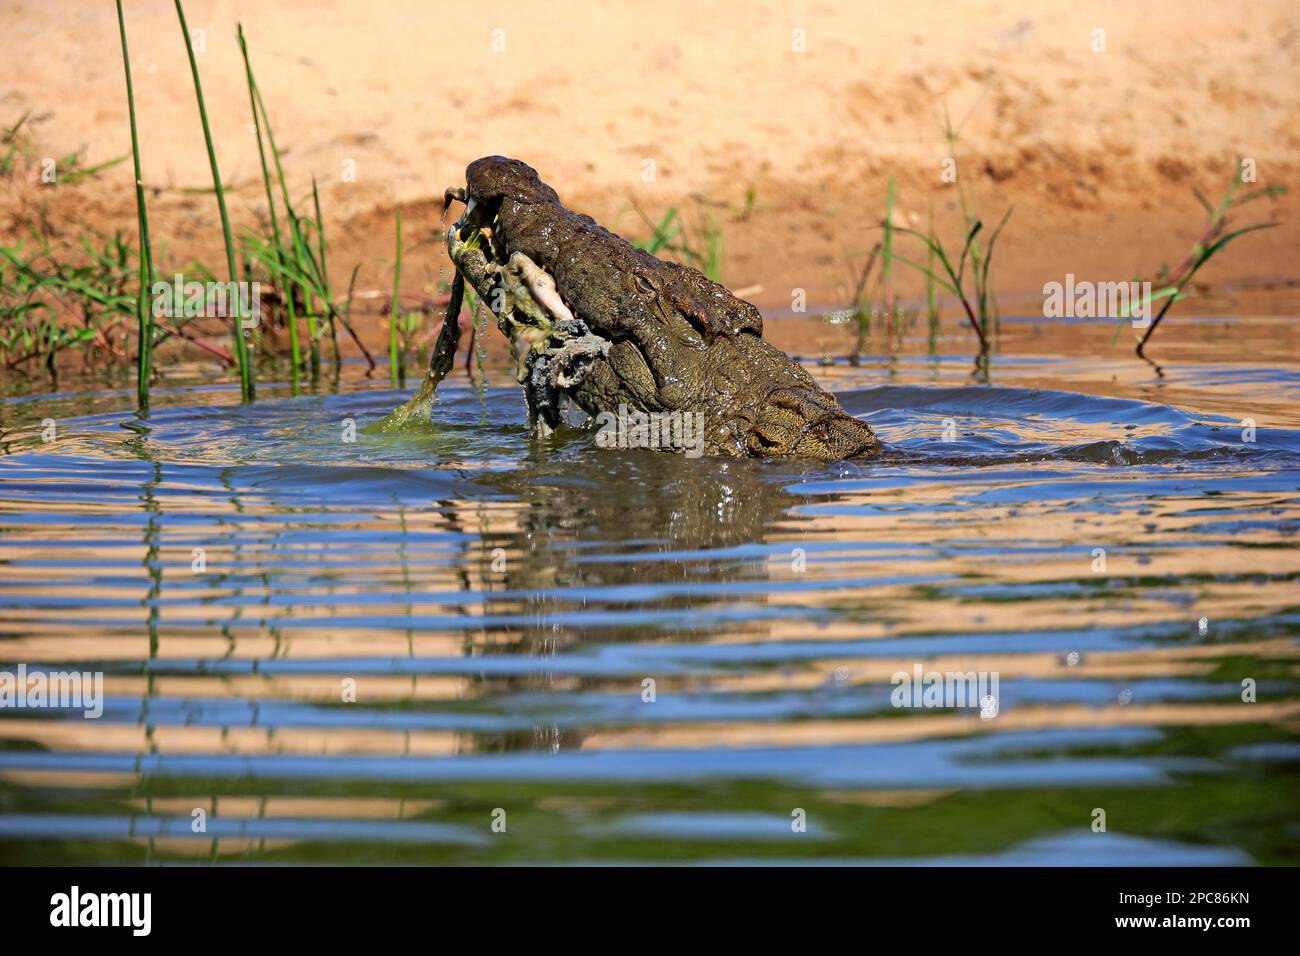 Crocodile du Nil (Crocodylus niloticus), adulte dans l'eau avec des proies, réserve de gibier de sable de Sabi, parc national Kruger, Afrique du Sud Banque D'Images